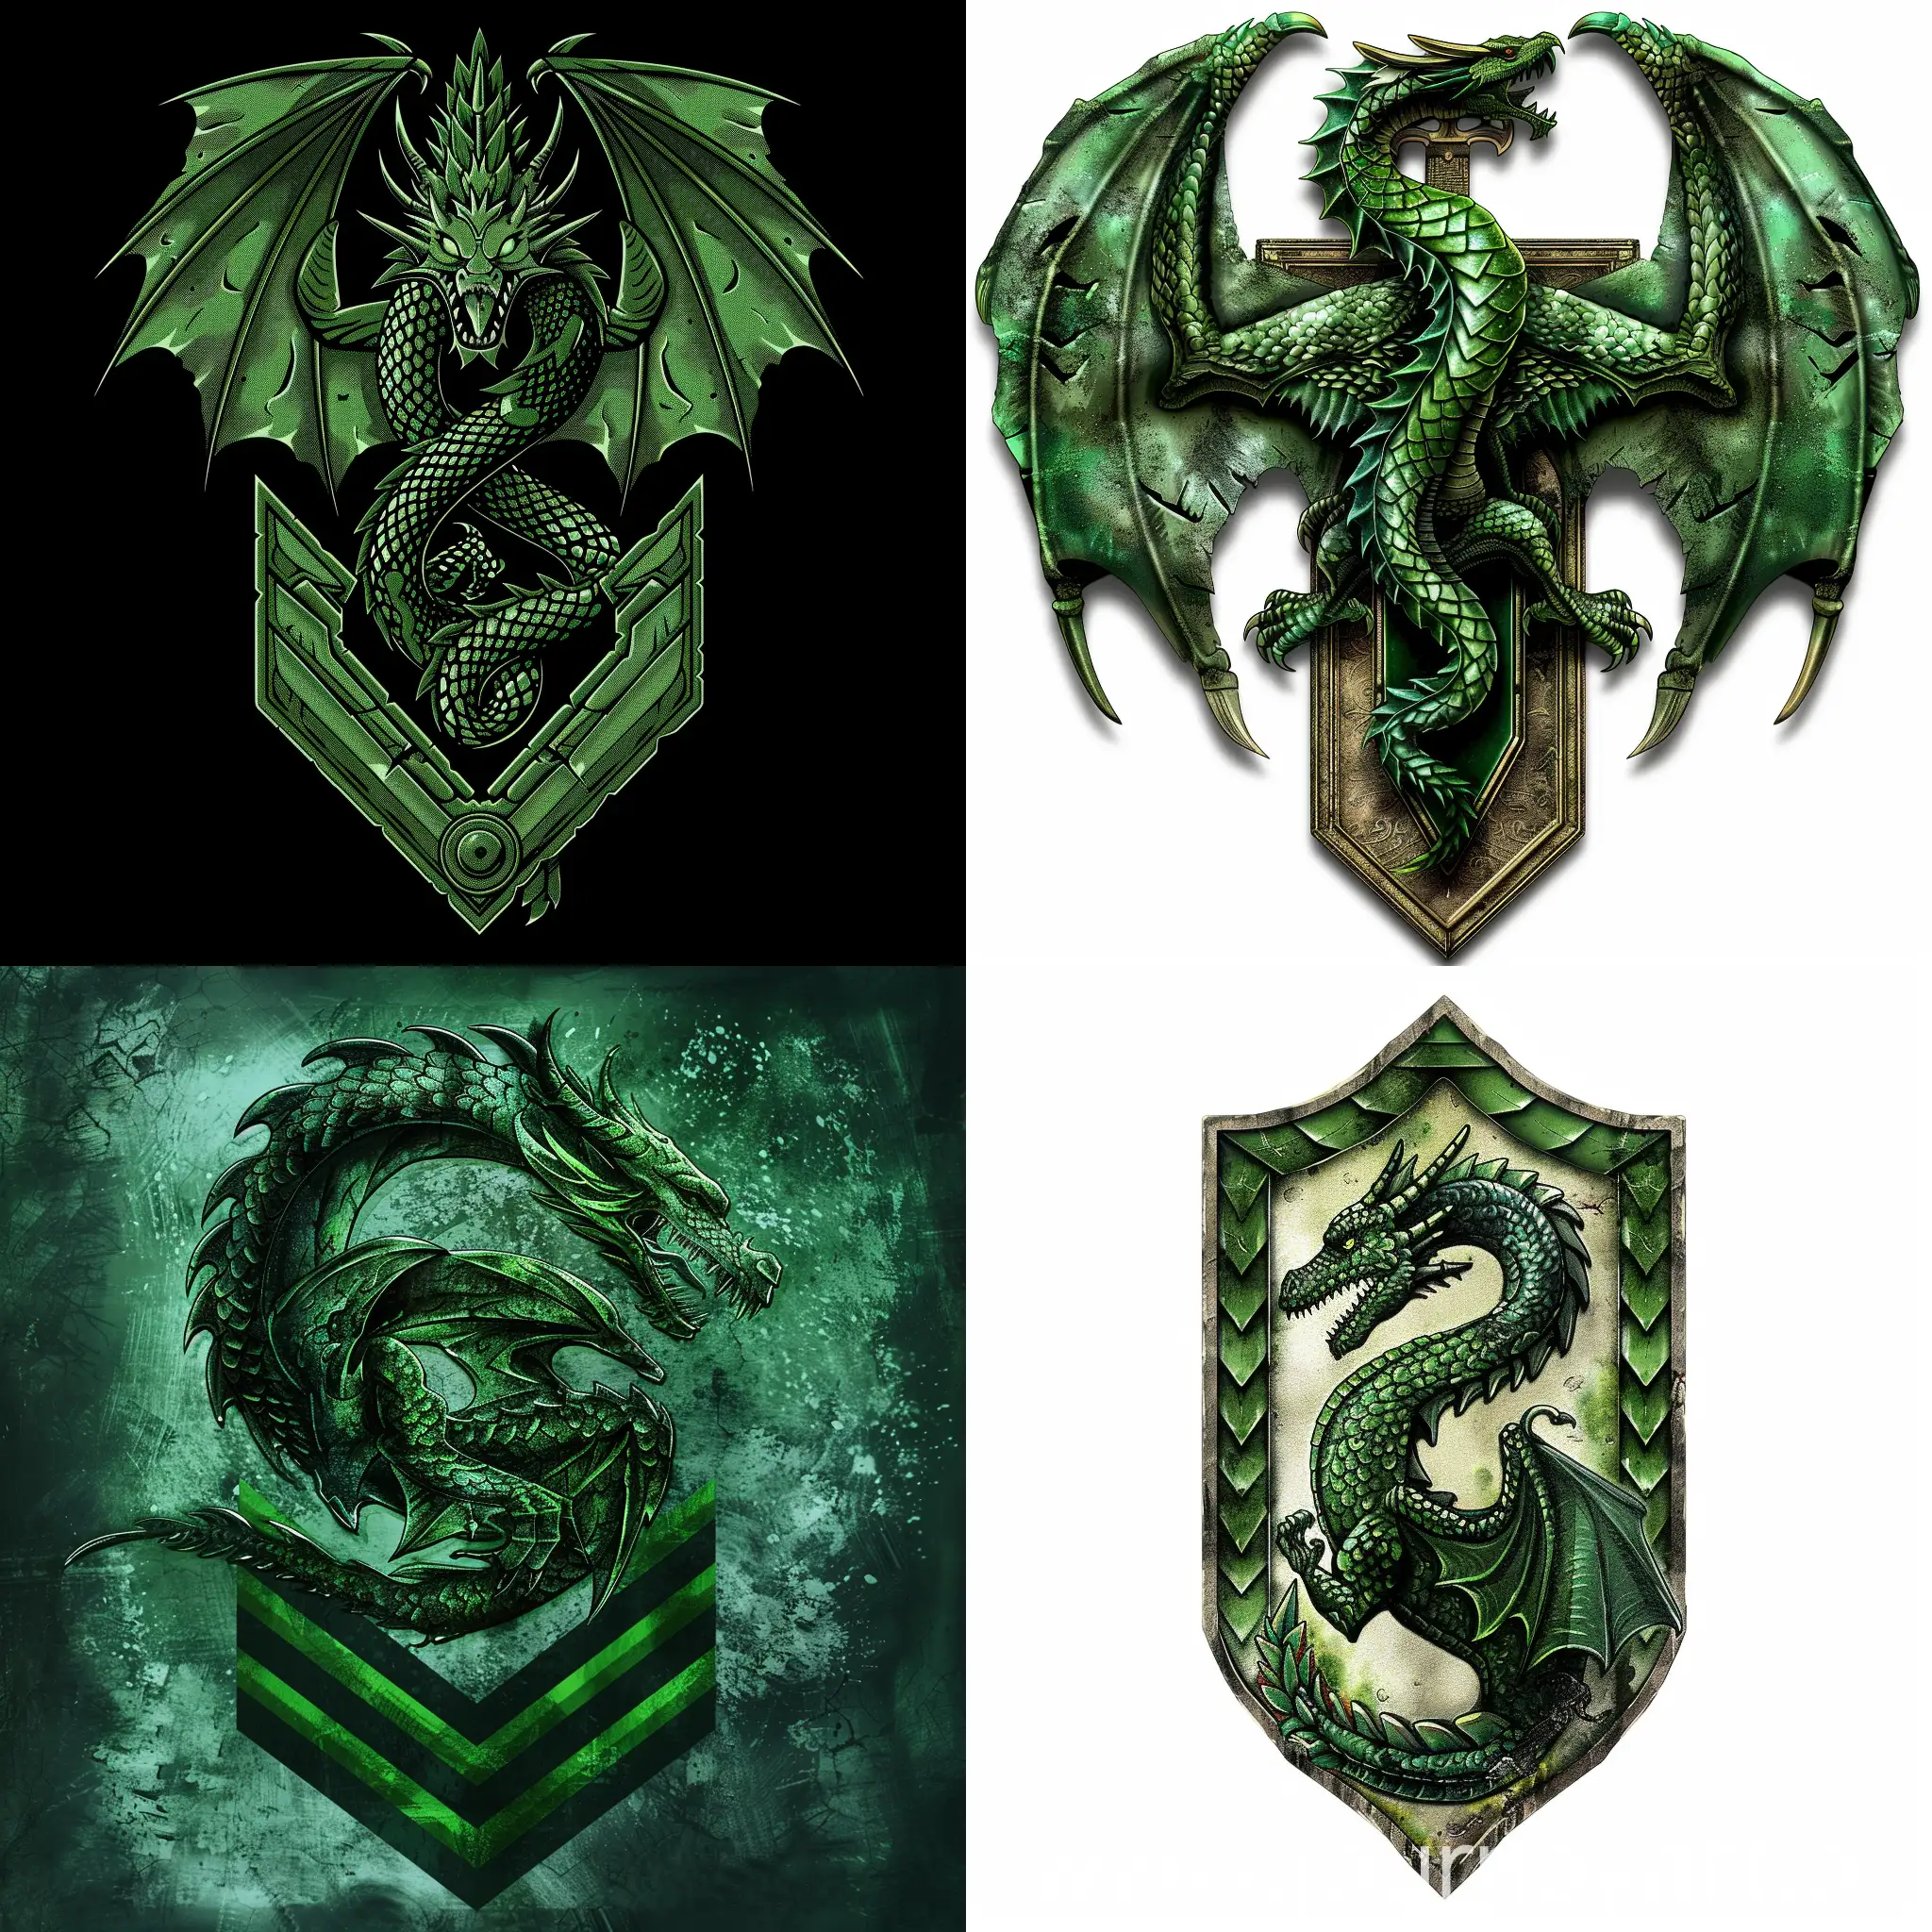 Emerald Dragon military chevron